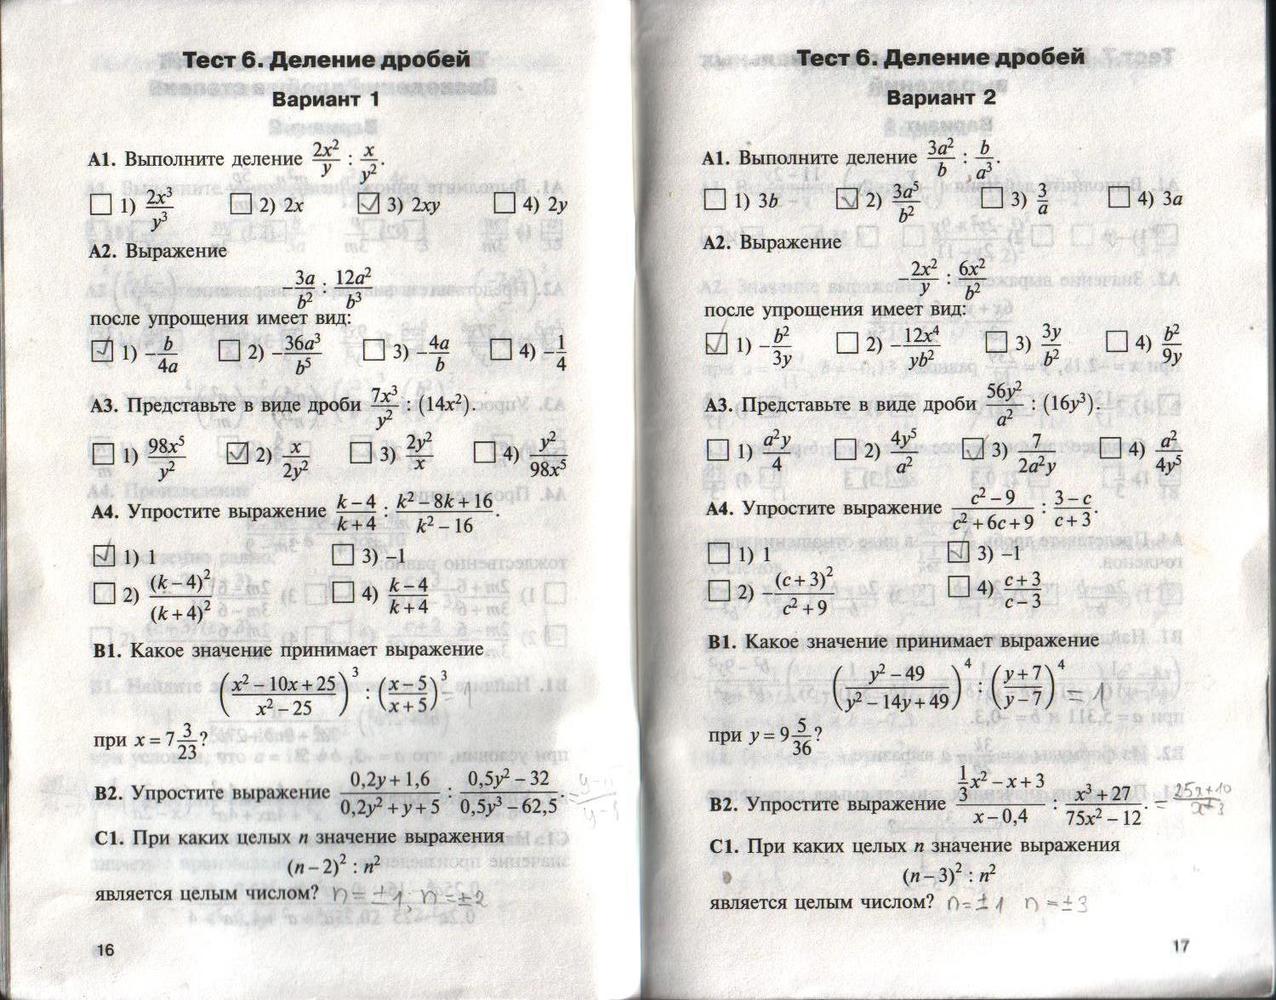 Тесты б 1 13. Гдз по контрольно измерительные материалы Алгебра 10 класс. Контрольные работы по алгебре 8 класс а1 а2 б1 б2. Контрольно измерительные материалы 10 класс Алгебра. Контрольно измерительные материалы 11 класс Алгебра.